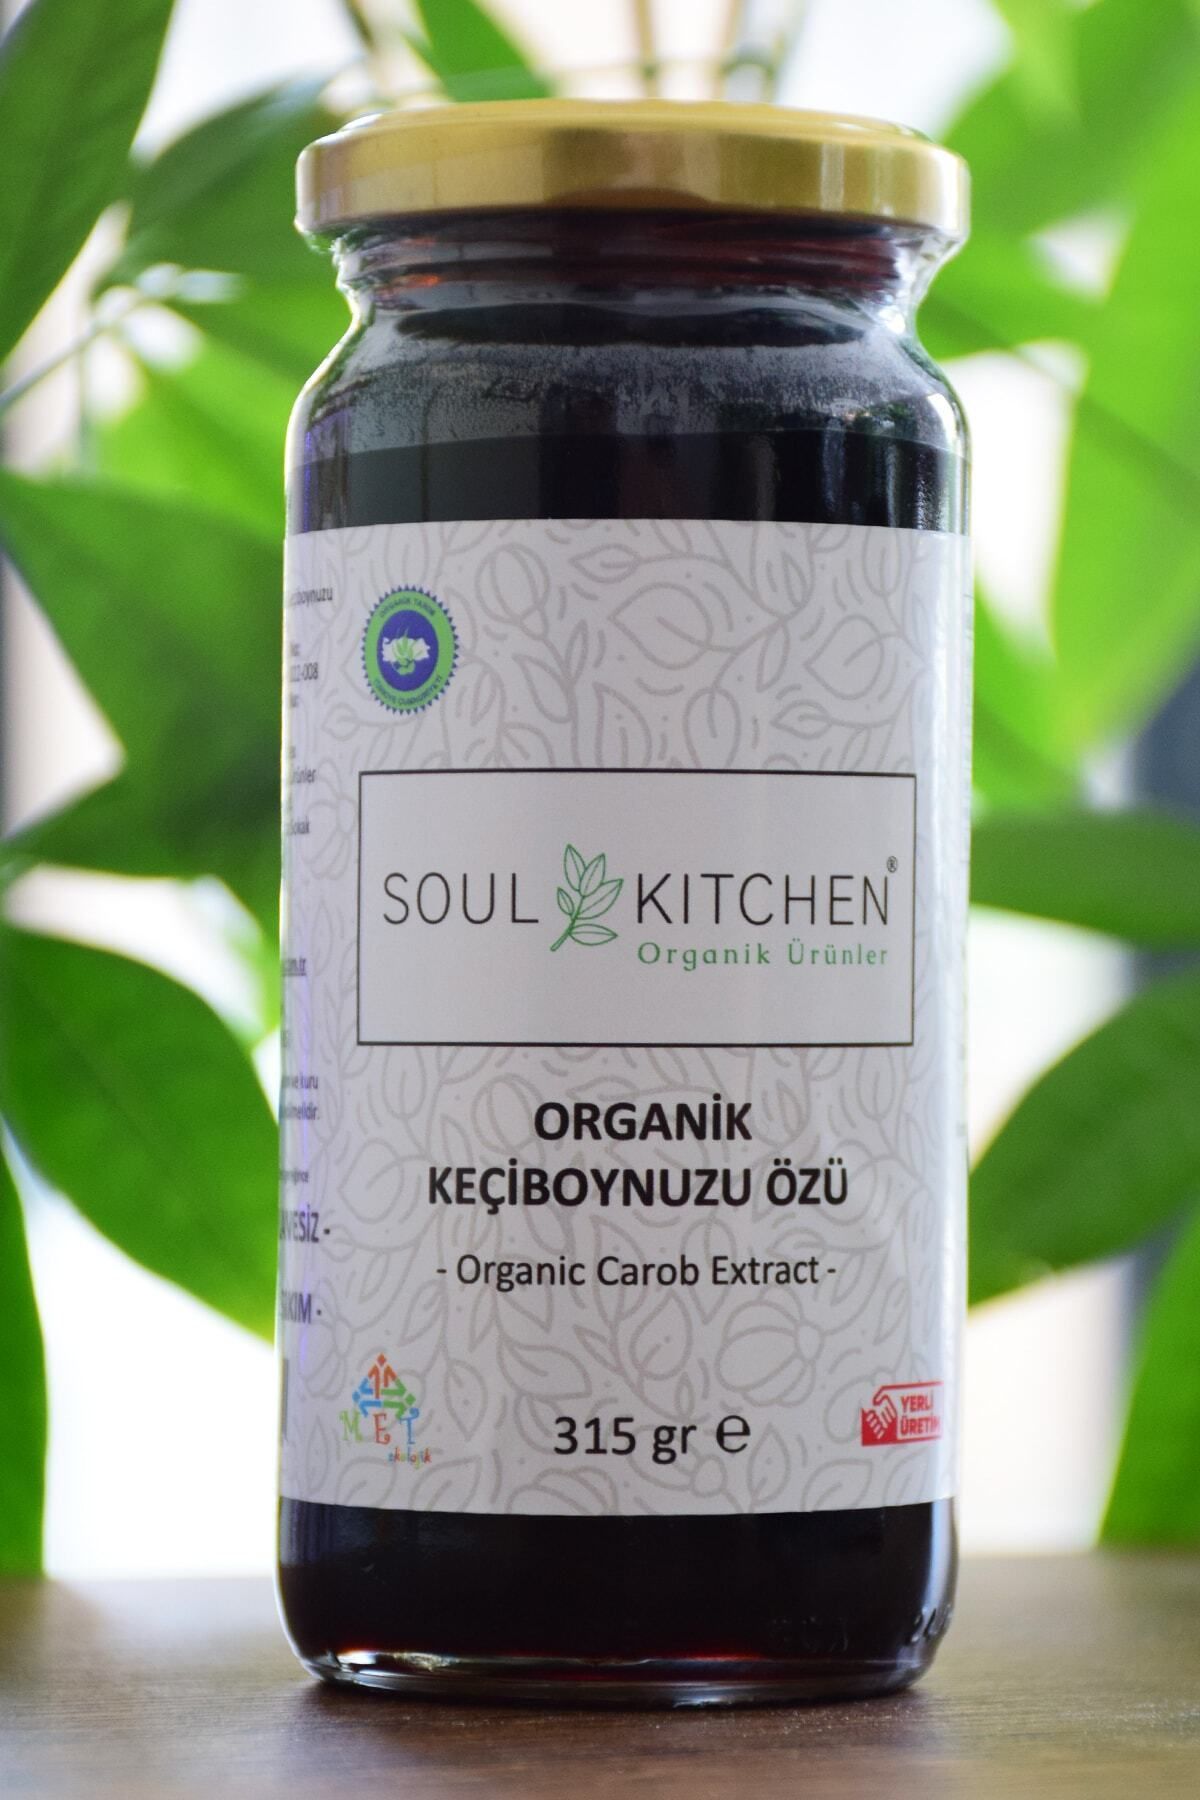 Soul Kitchen Organik Ürünler Organik Keçiboynuzu Özü 315gr (SOĞUK SIKIM) (ŞEKER İLAVESİZ)